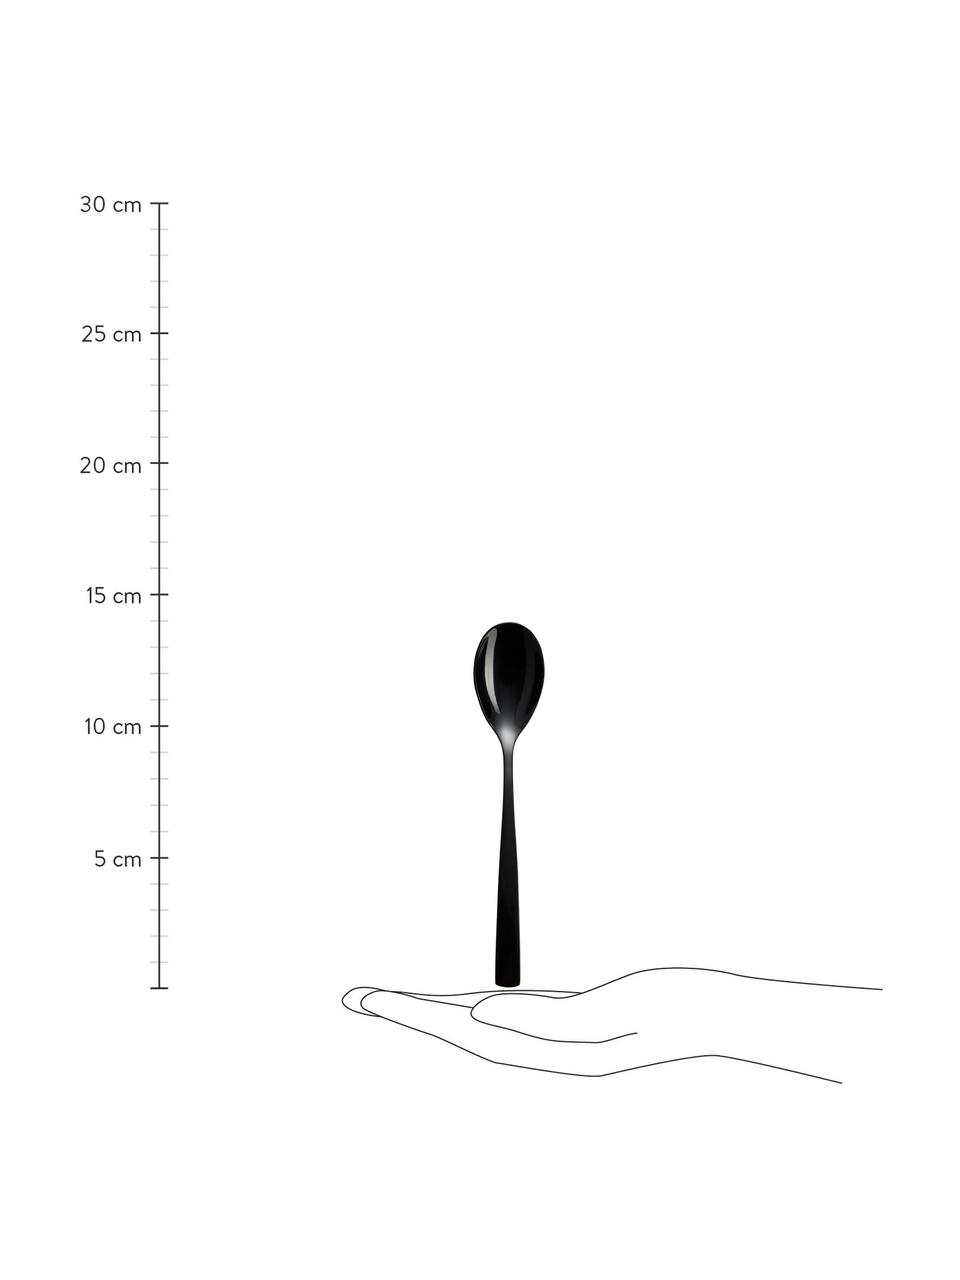 Cucchiaino nero lucido Shinko 6 pz, Acciaio inossidabile

Le posate sono realizzate in acciaio inossidabile. È quindi durevole, non arrugginisce ed è resistente ai batteri, Nero molto lucido, Lung. 14 cm